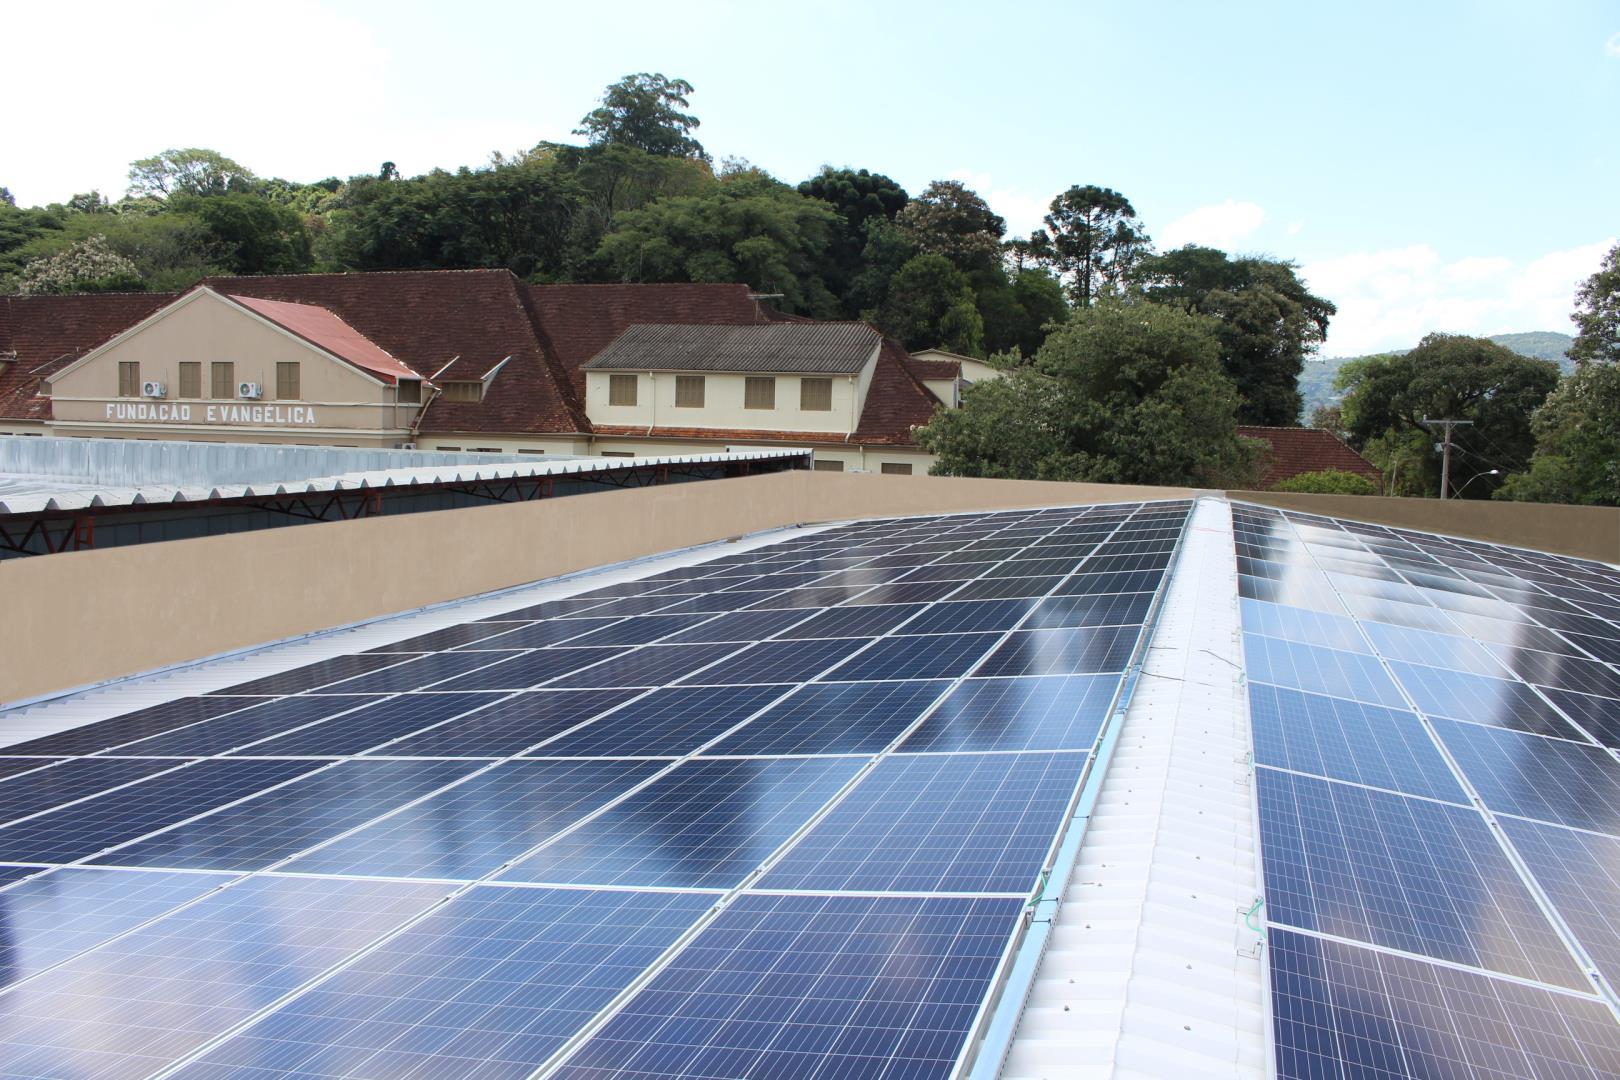 IENH inaugura sistema de geração de energia solar fotovoltaica na Unidade Fundação Evangélica